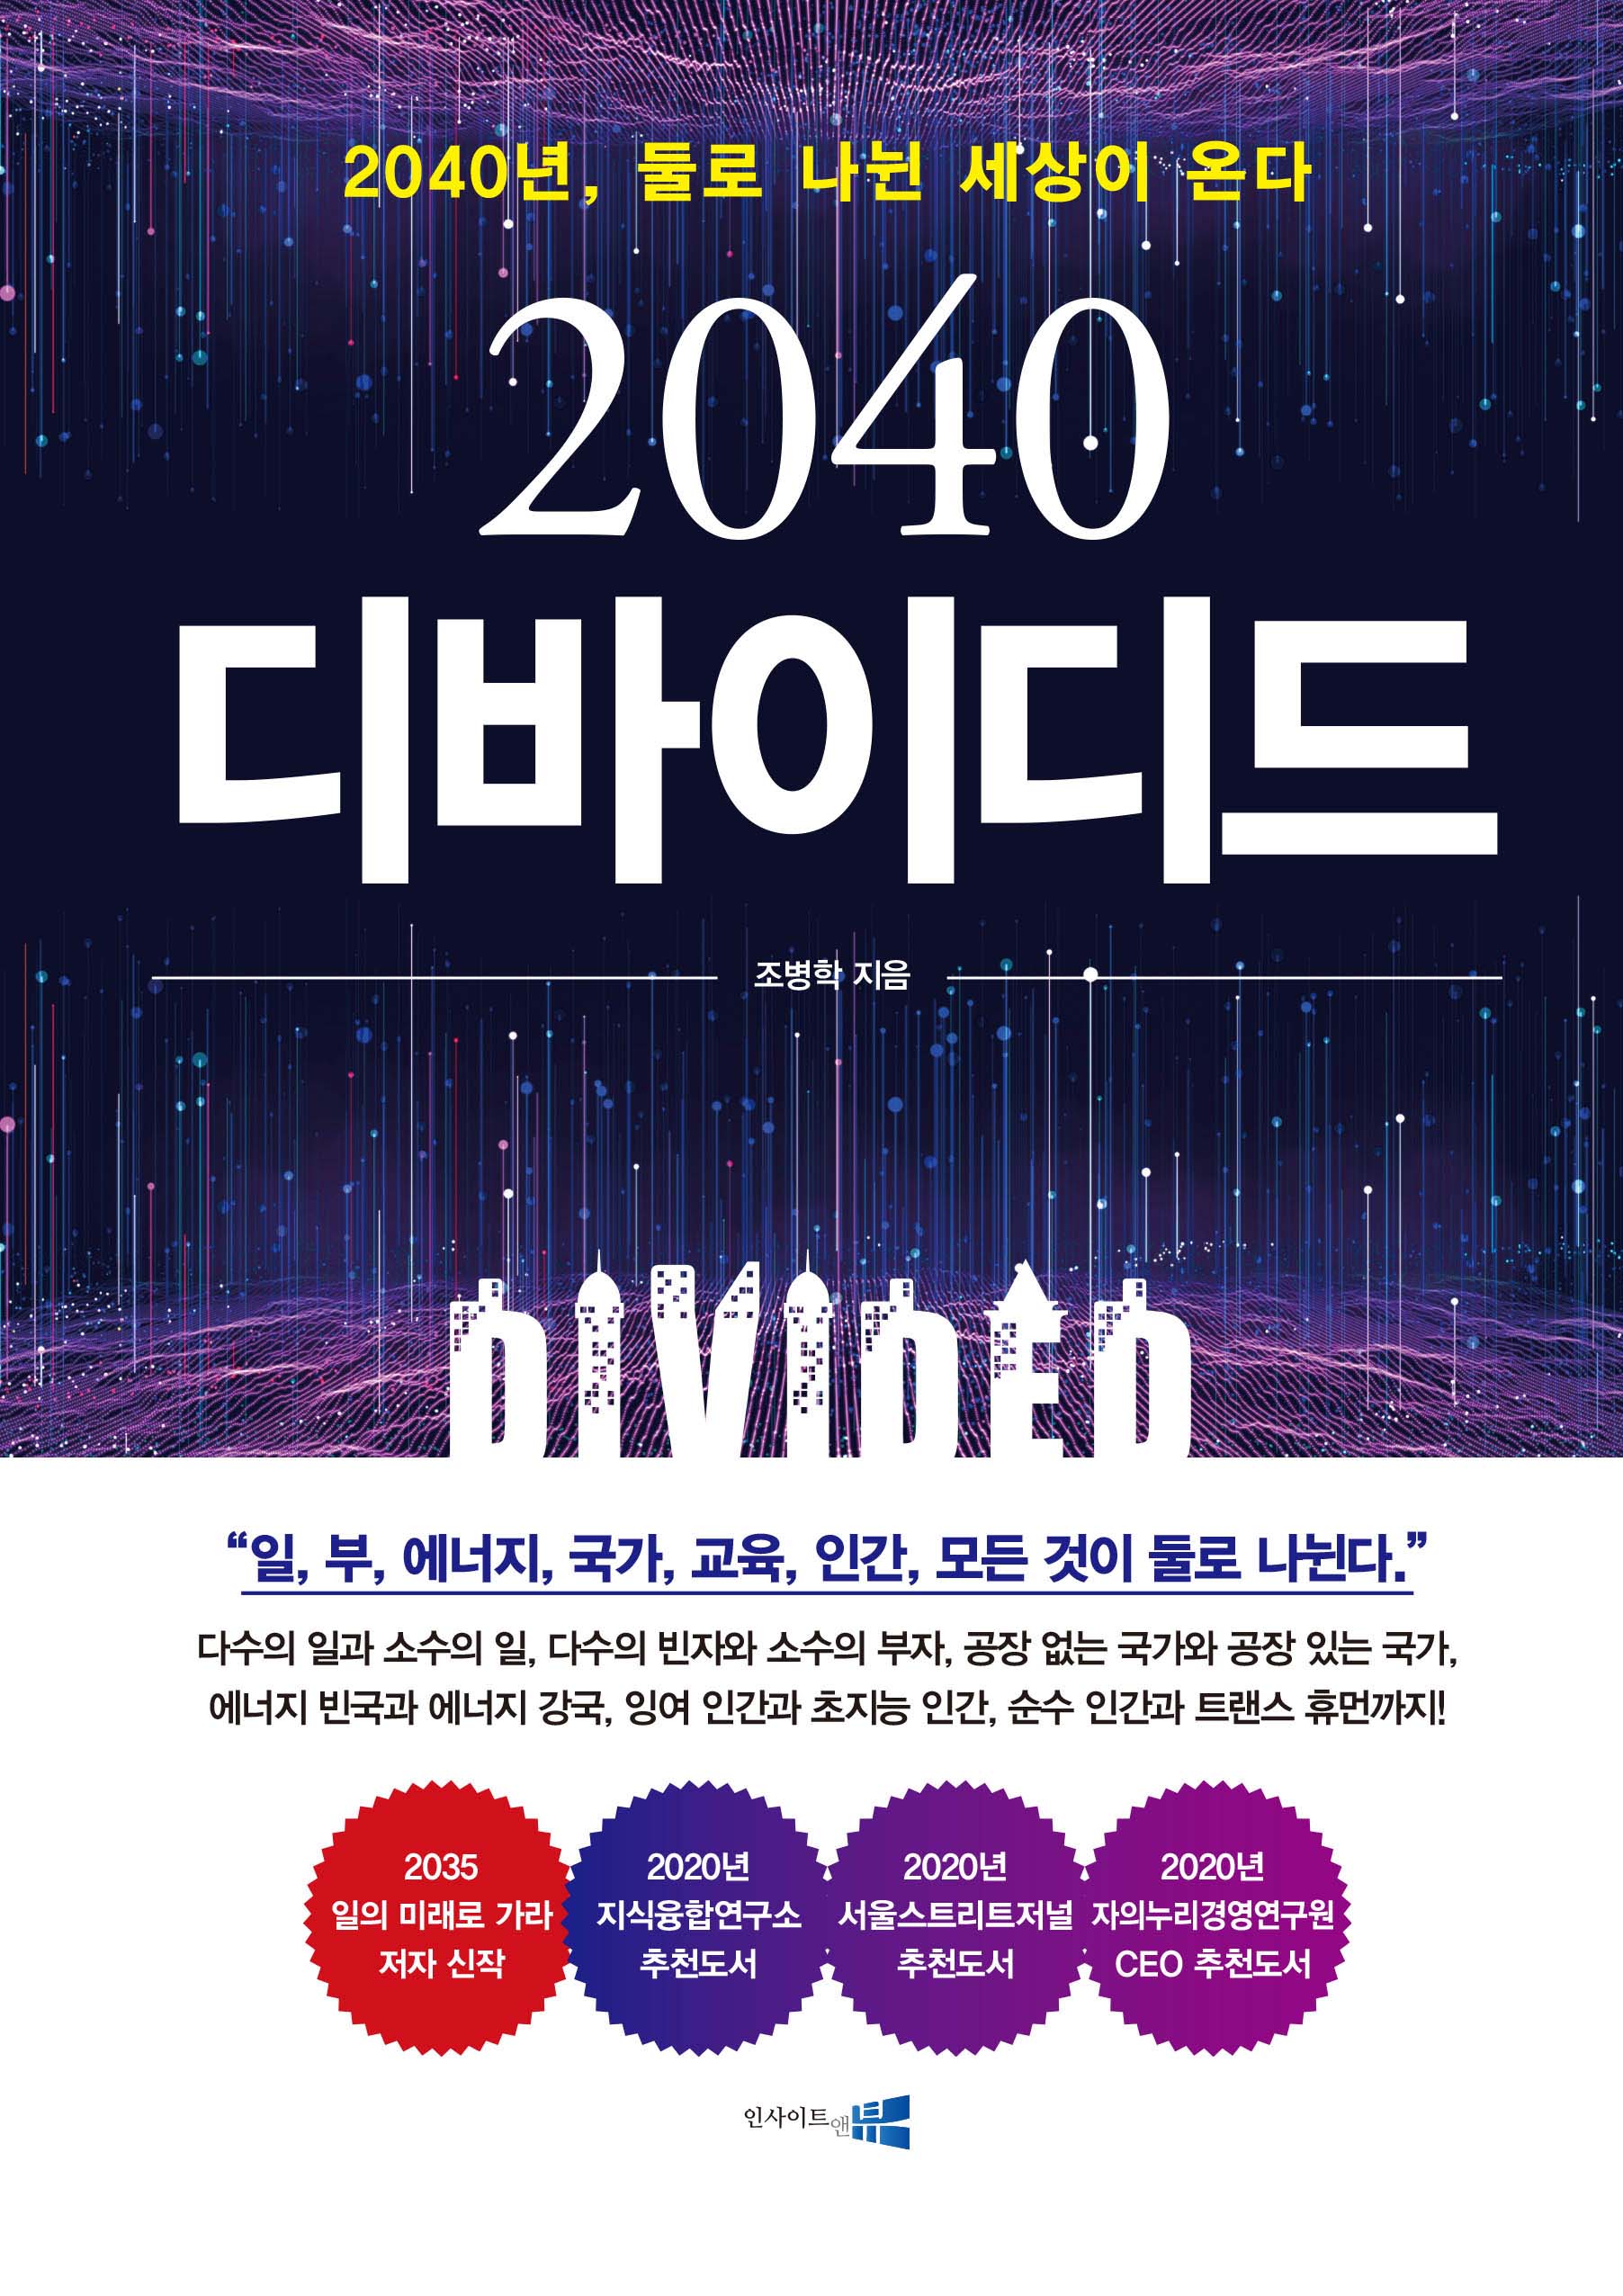 (2040)디바이디드: 2040년, 둘로 나뉜 세상이 온다! 